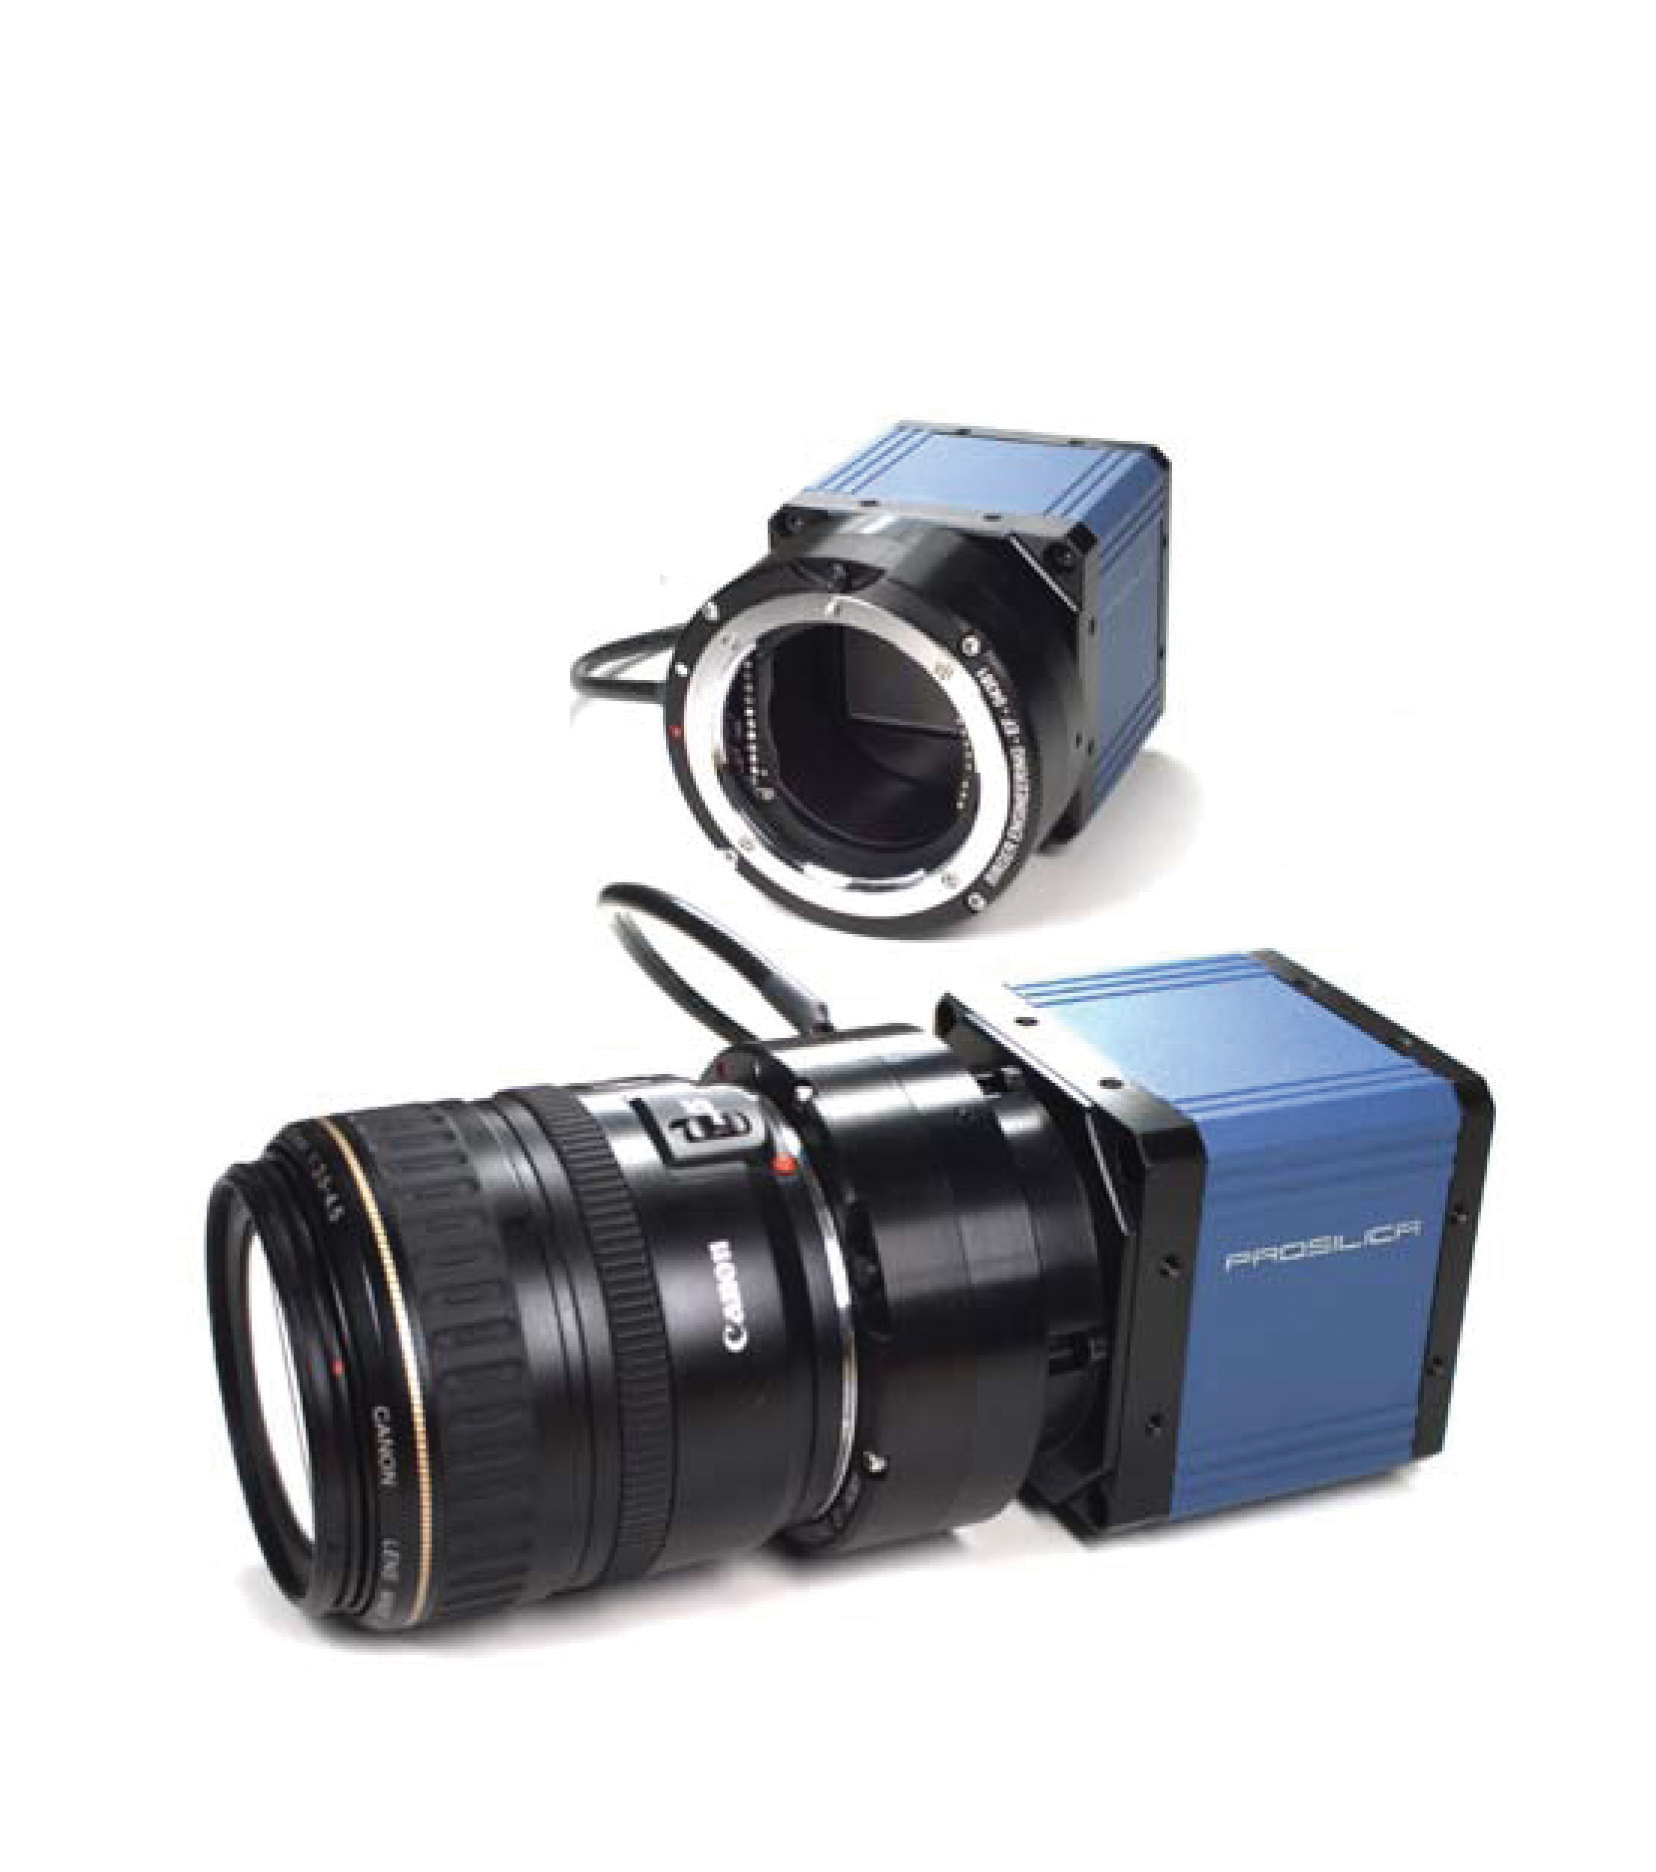 Prosilica 35mm format GigE cameras